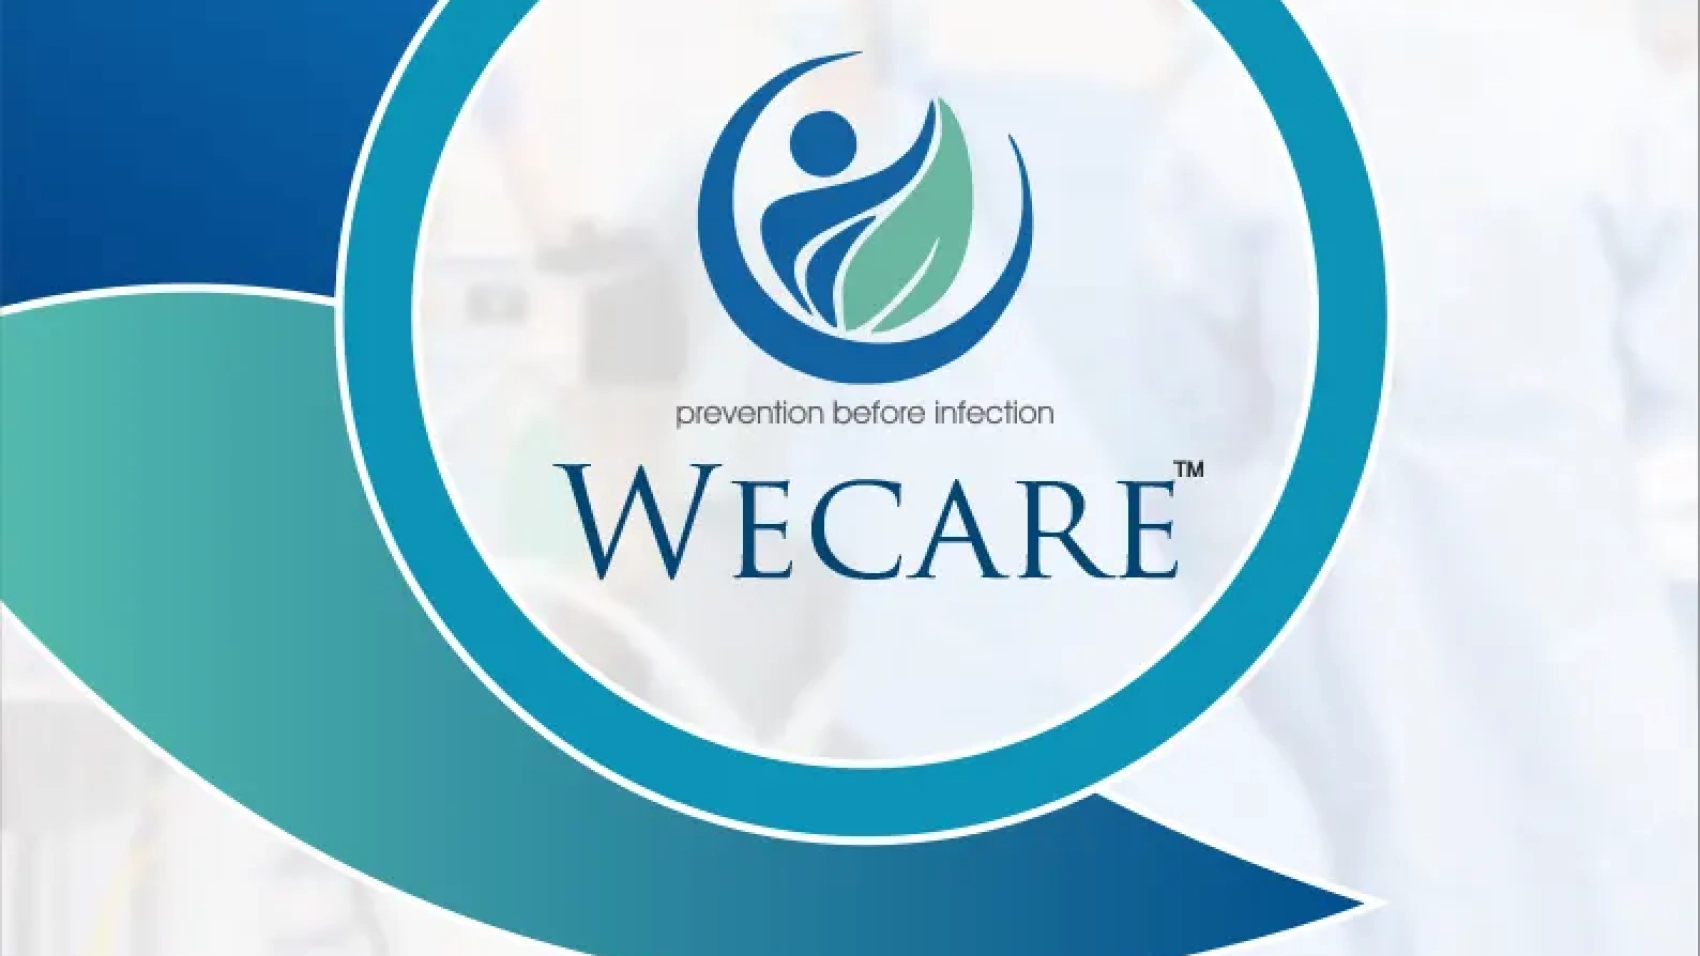 Wecare_2-1